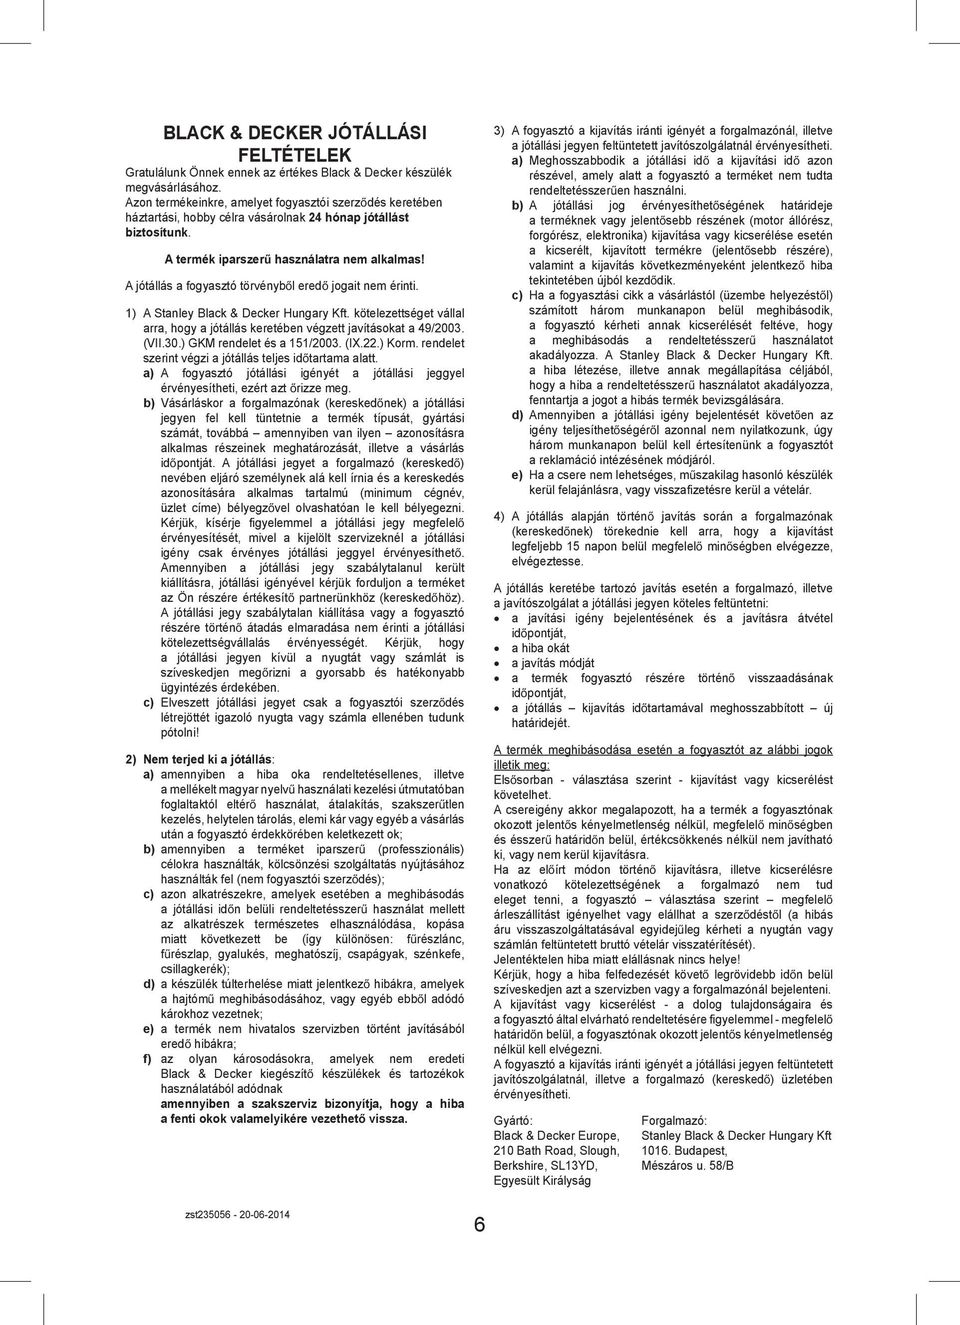 A jótállás a fogyasztó törvényb l ered jogait nem érinti. 1) A Stanley Black & Decker Hungary Kft. kötelezettséget vállal arra, hogy a jótállás keretében végzett javításokat a 49/2003. (VII.30.